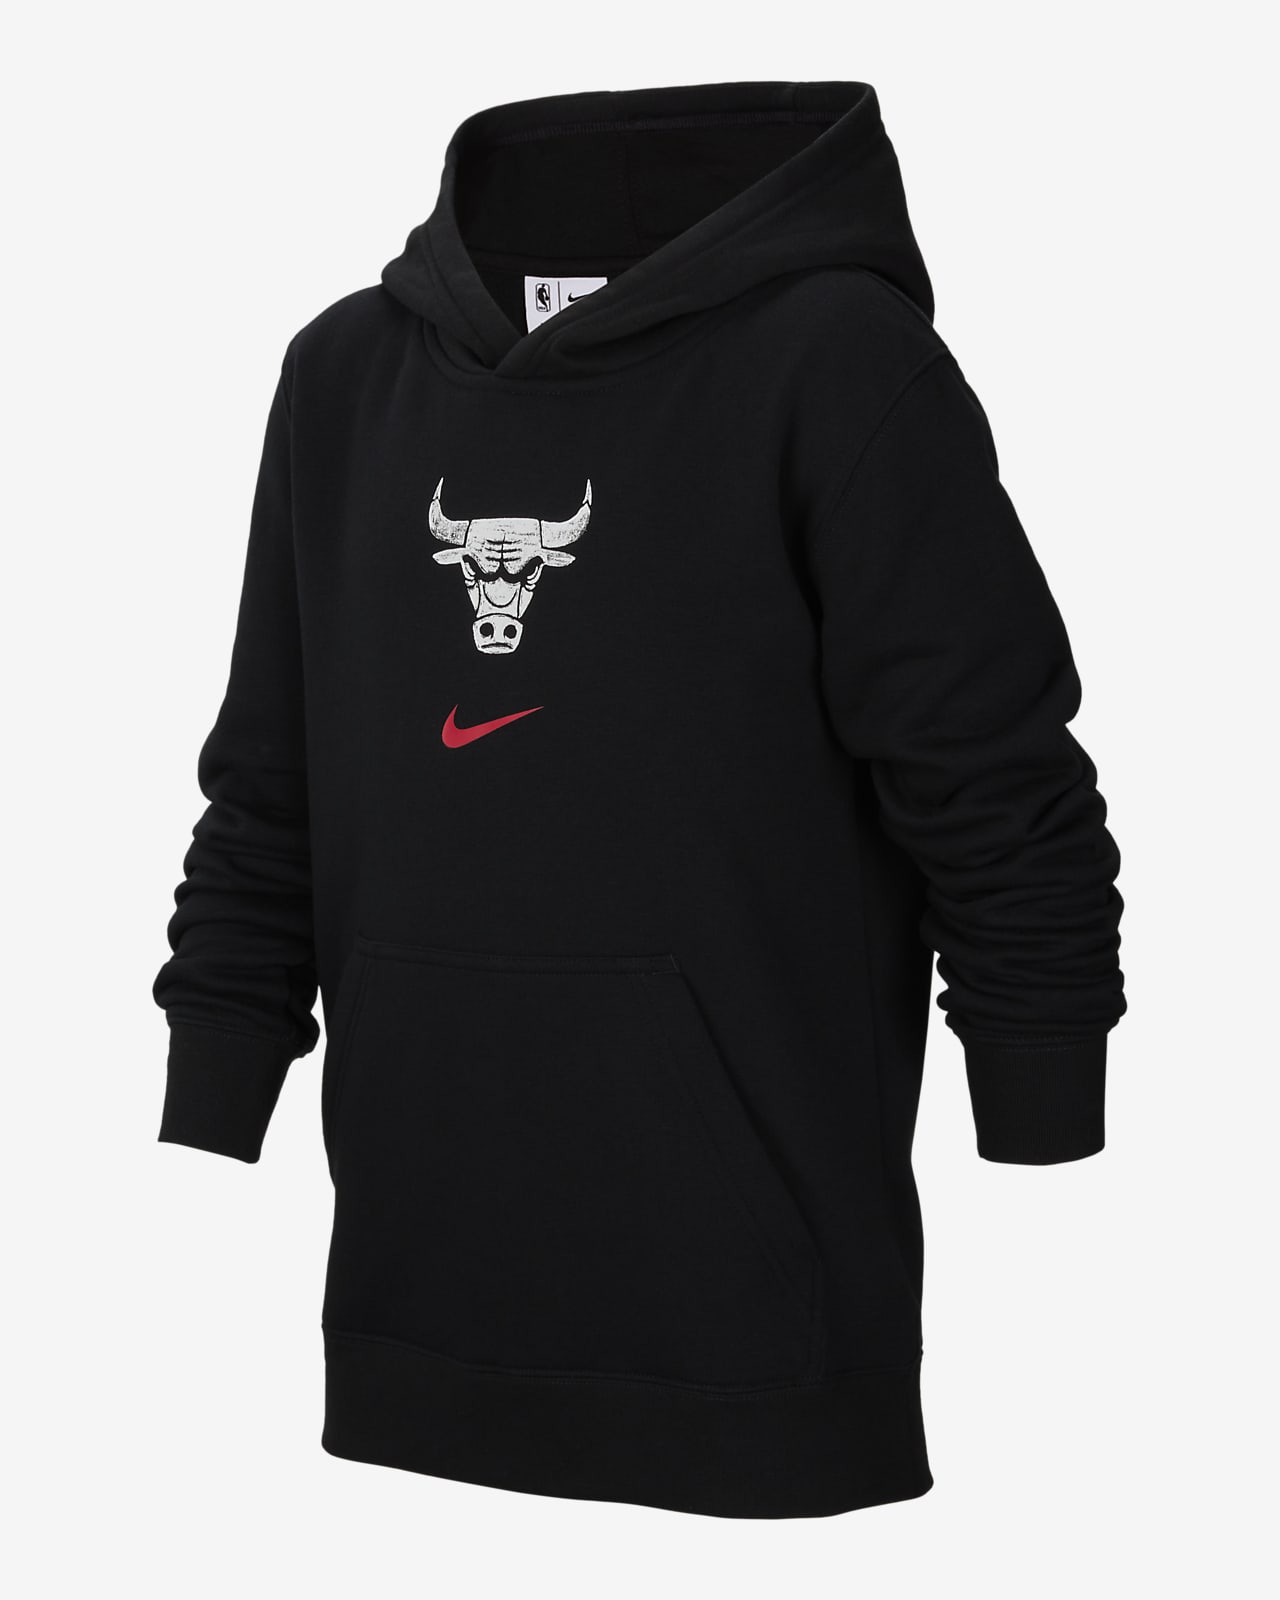 Chicago Bulls Club City Edition Nike NBA-pullover-hættetrøje til større børn (drenge)